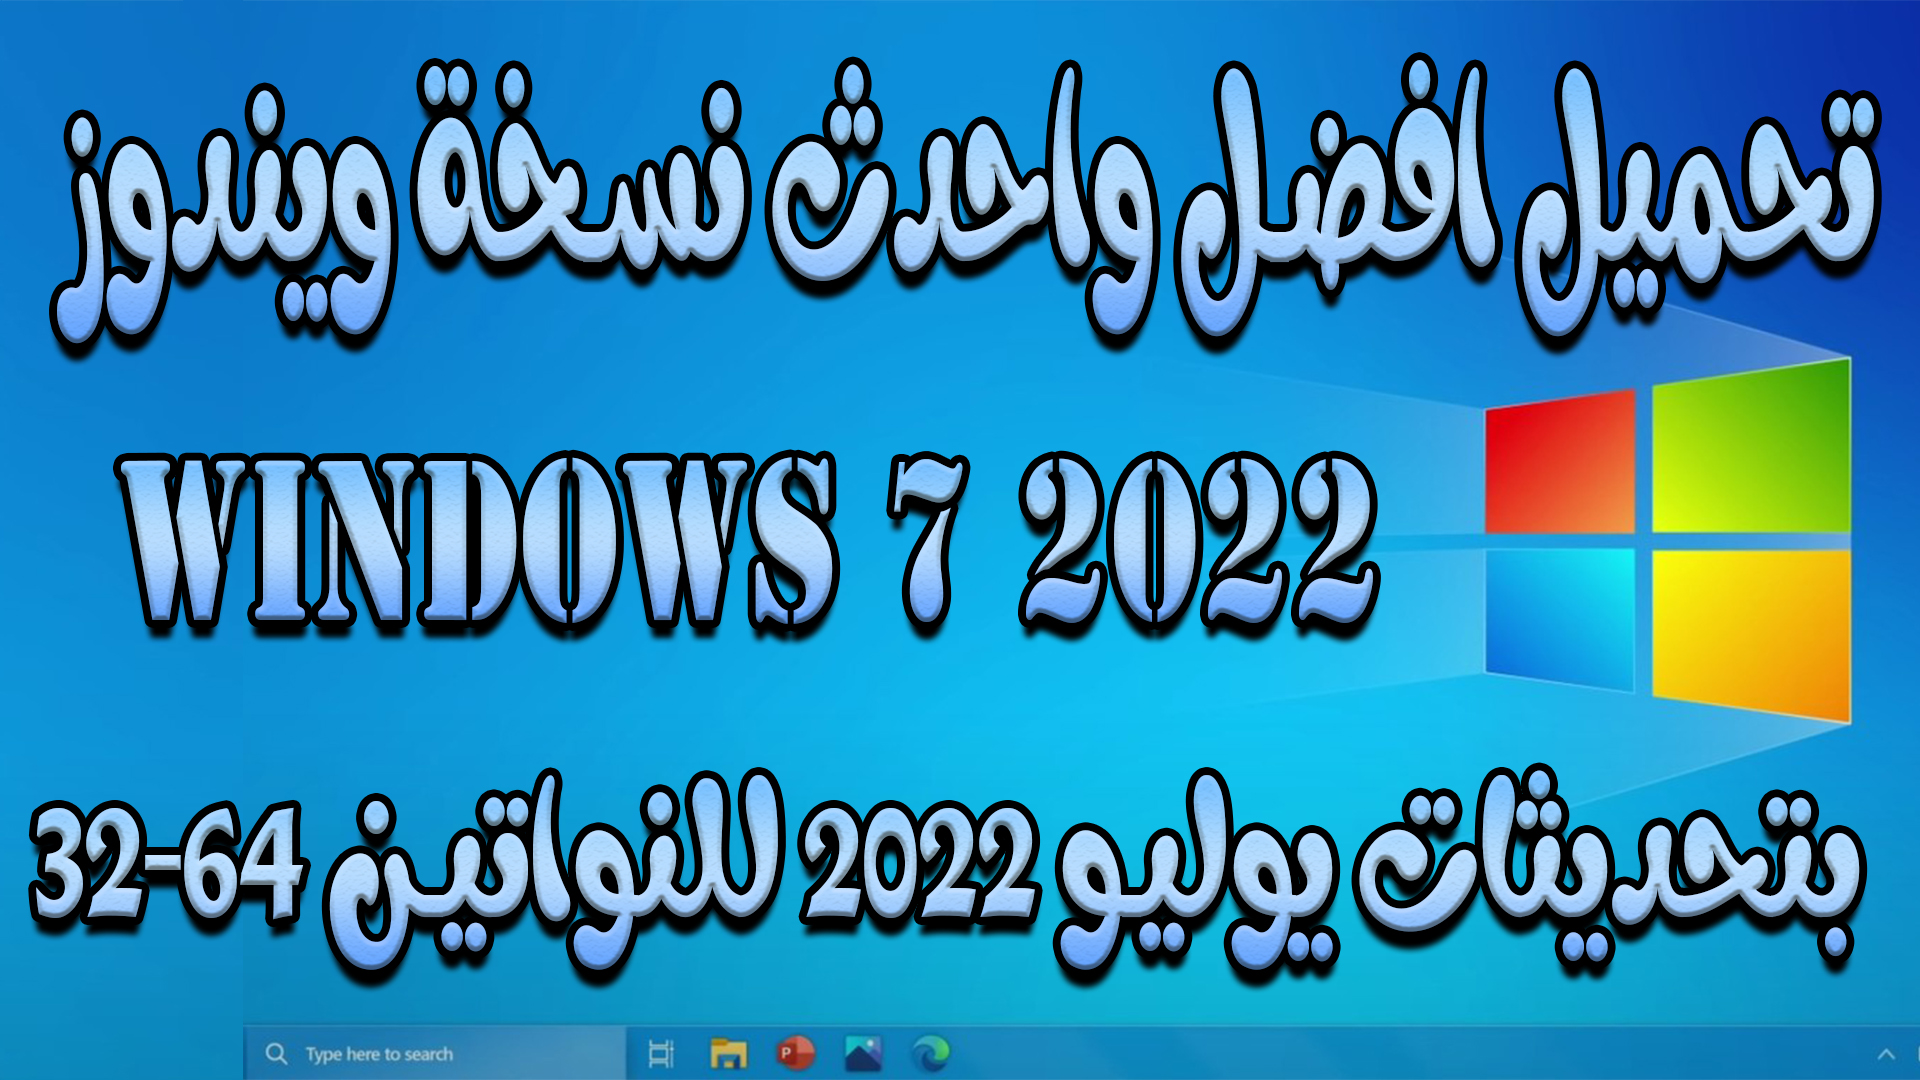 تحميل افضل واحدث نسخة ويندوز windows 7-2022 بتحديثات يوليو 2022 للنواتين 64-32